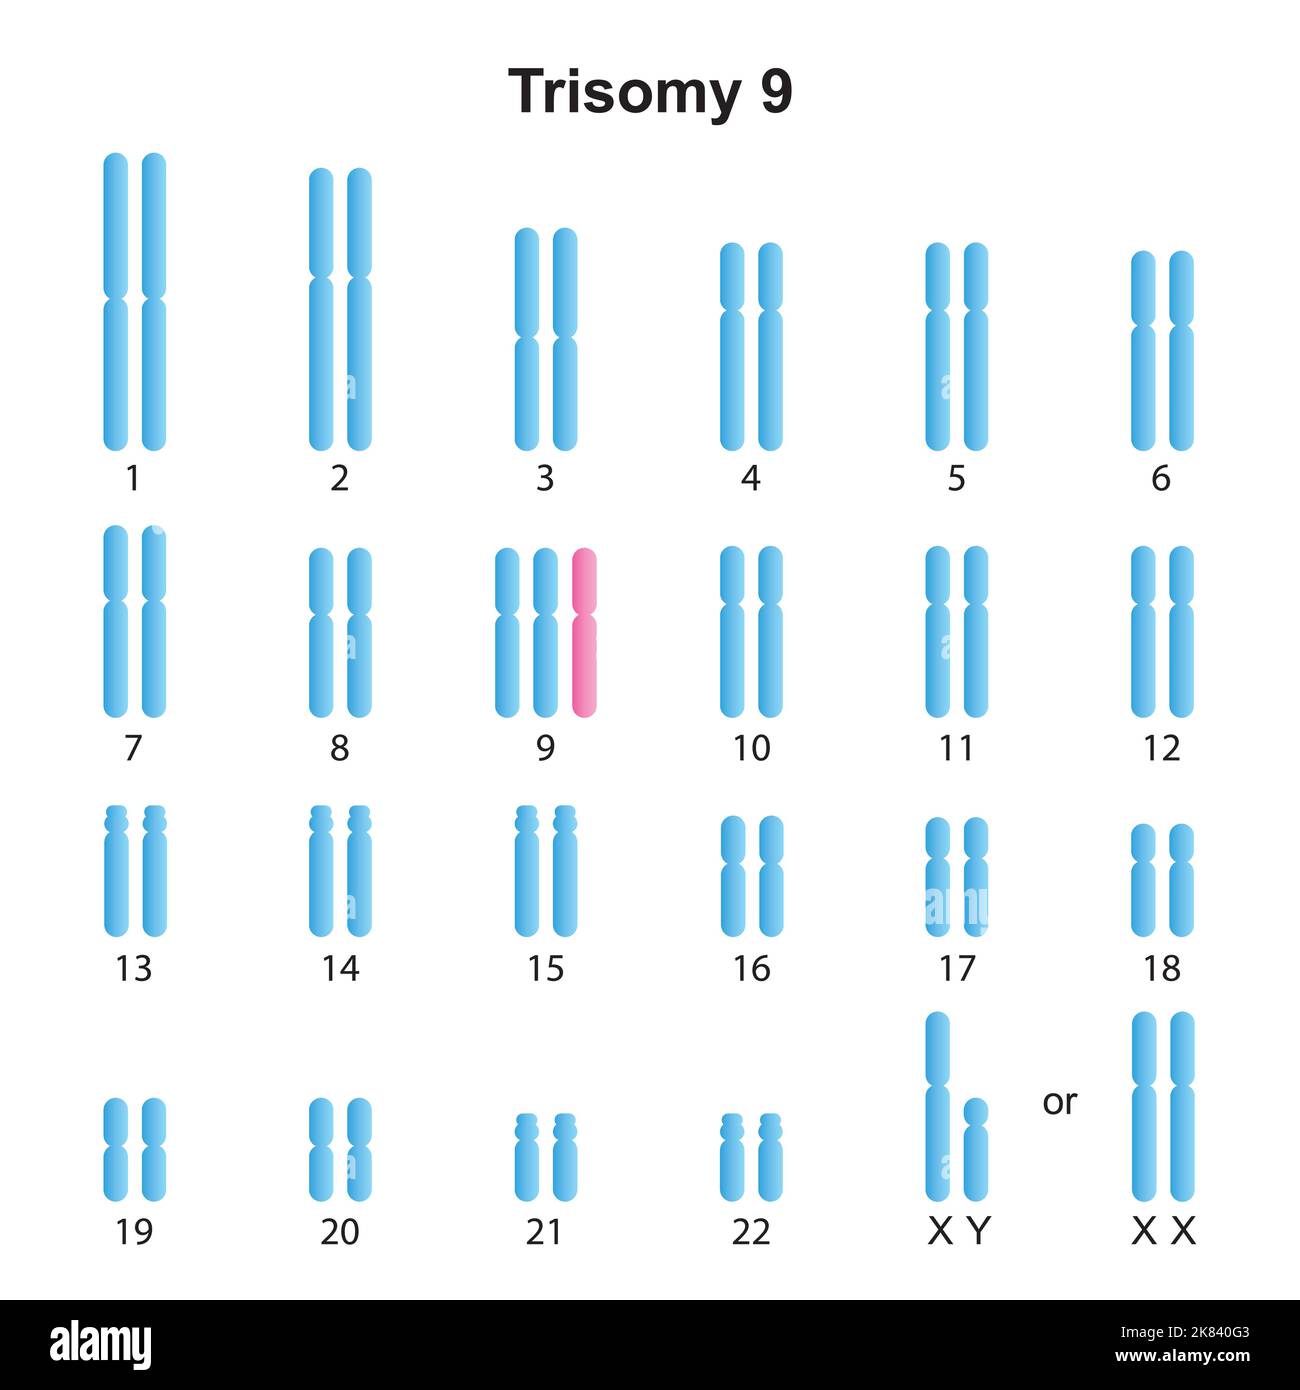 Progettazione scientifica del cariotipo Trisomy 9. Simboli colorati. Illustrazione vettoriale. Illustrazione Vettoriale